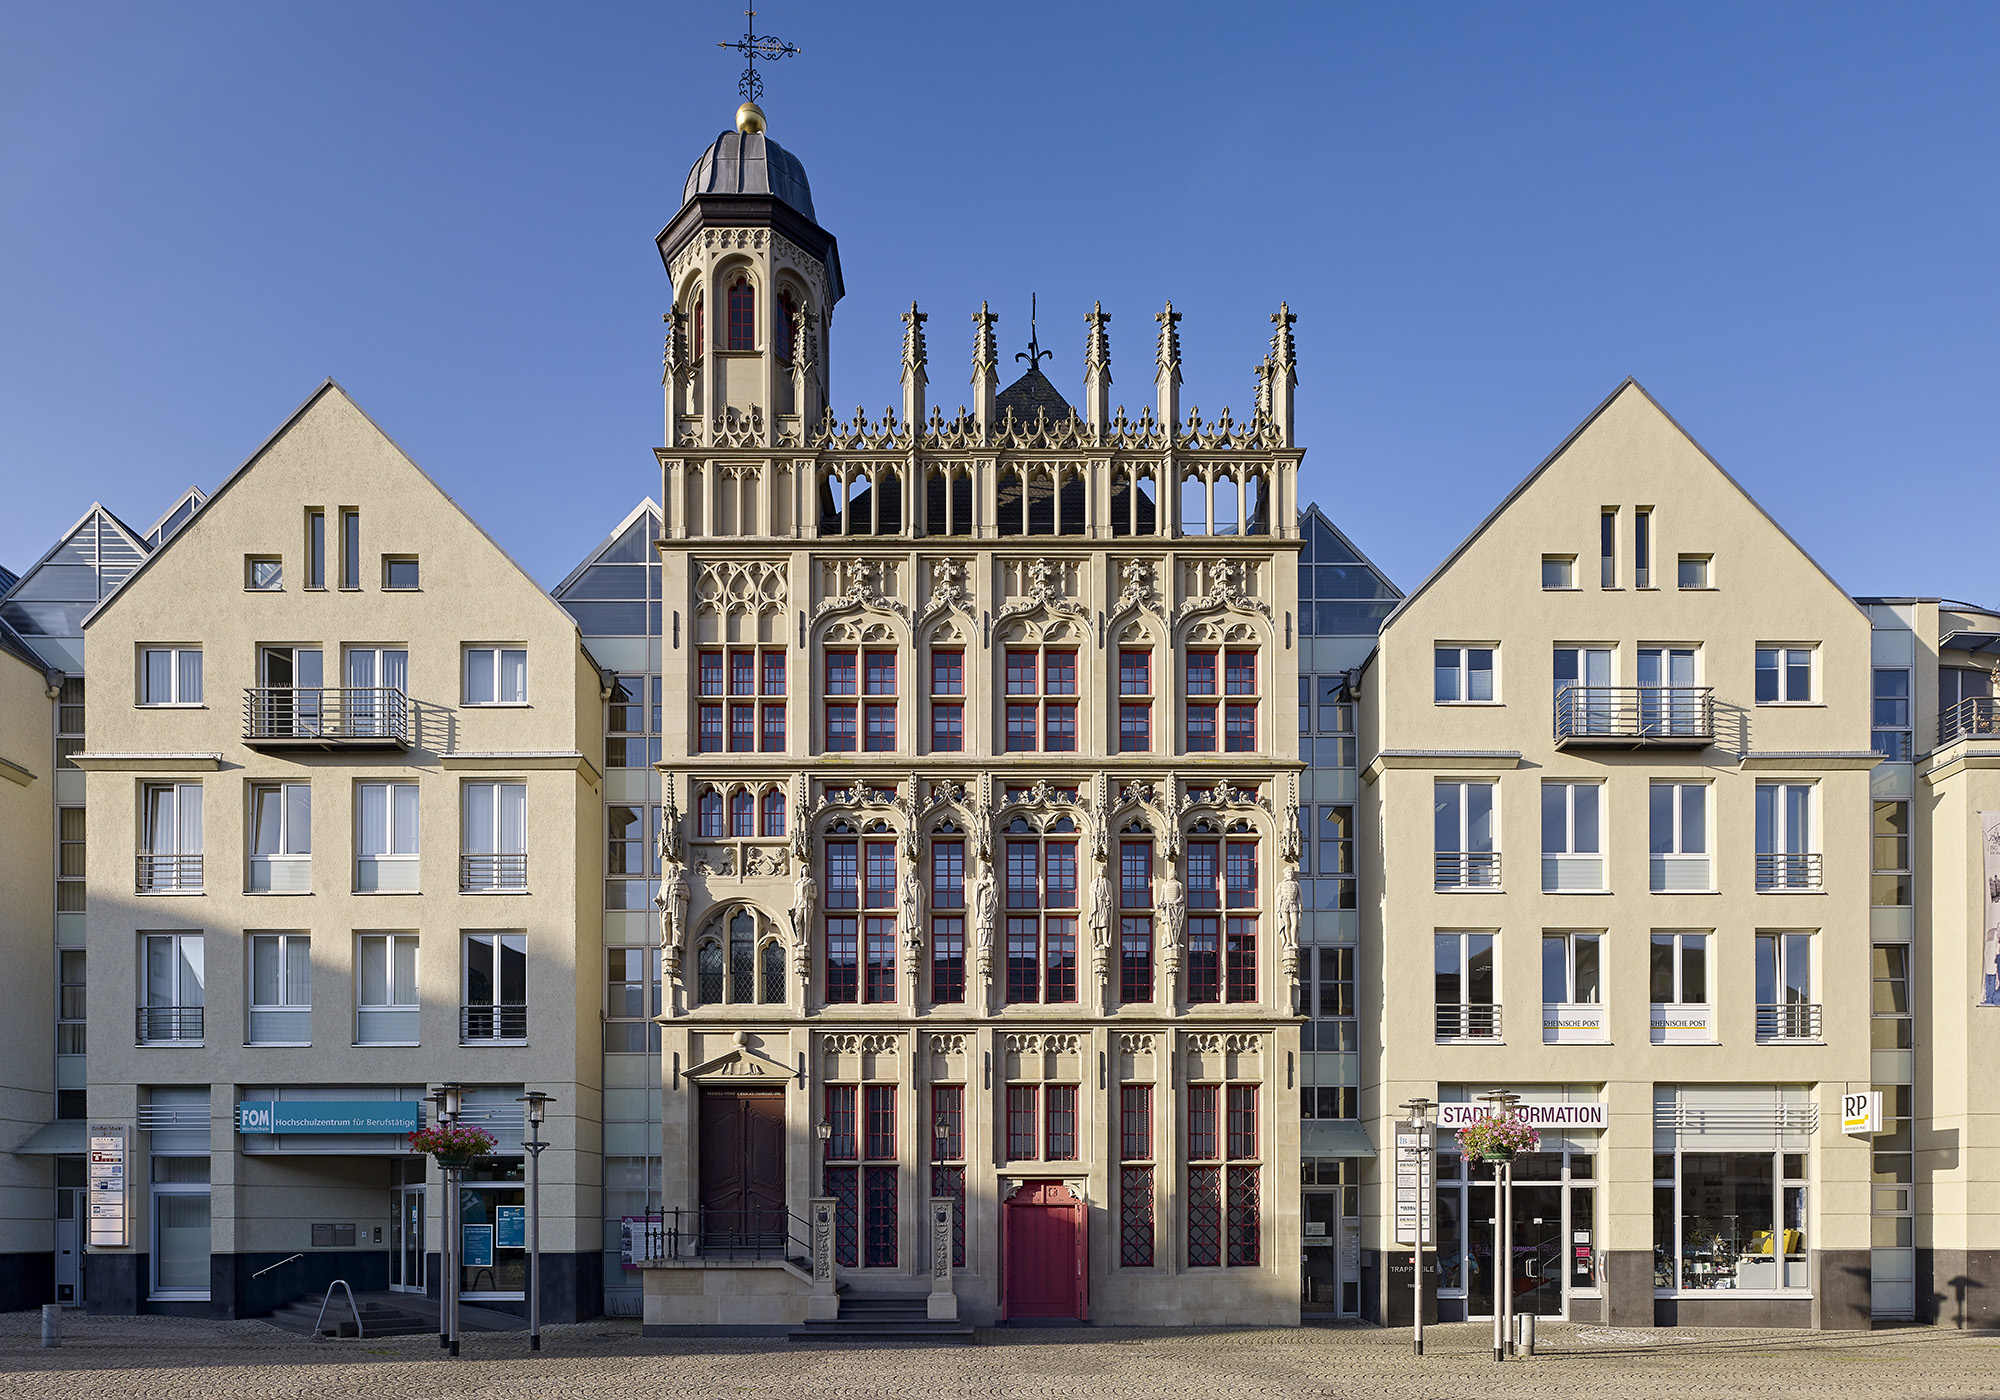 Fassadensanierung Trappzeile, Großer Markt, 46483 Wesel